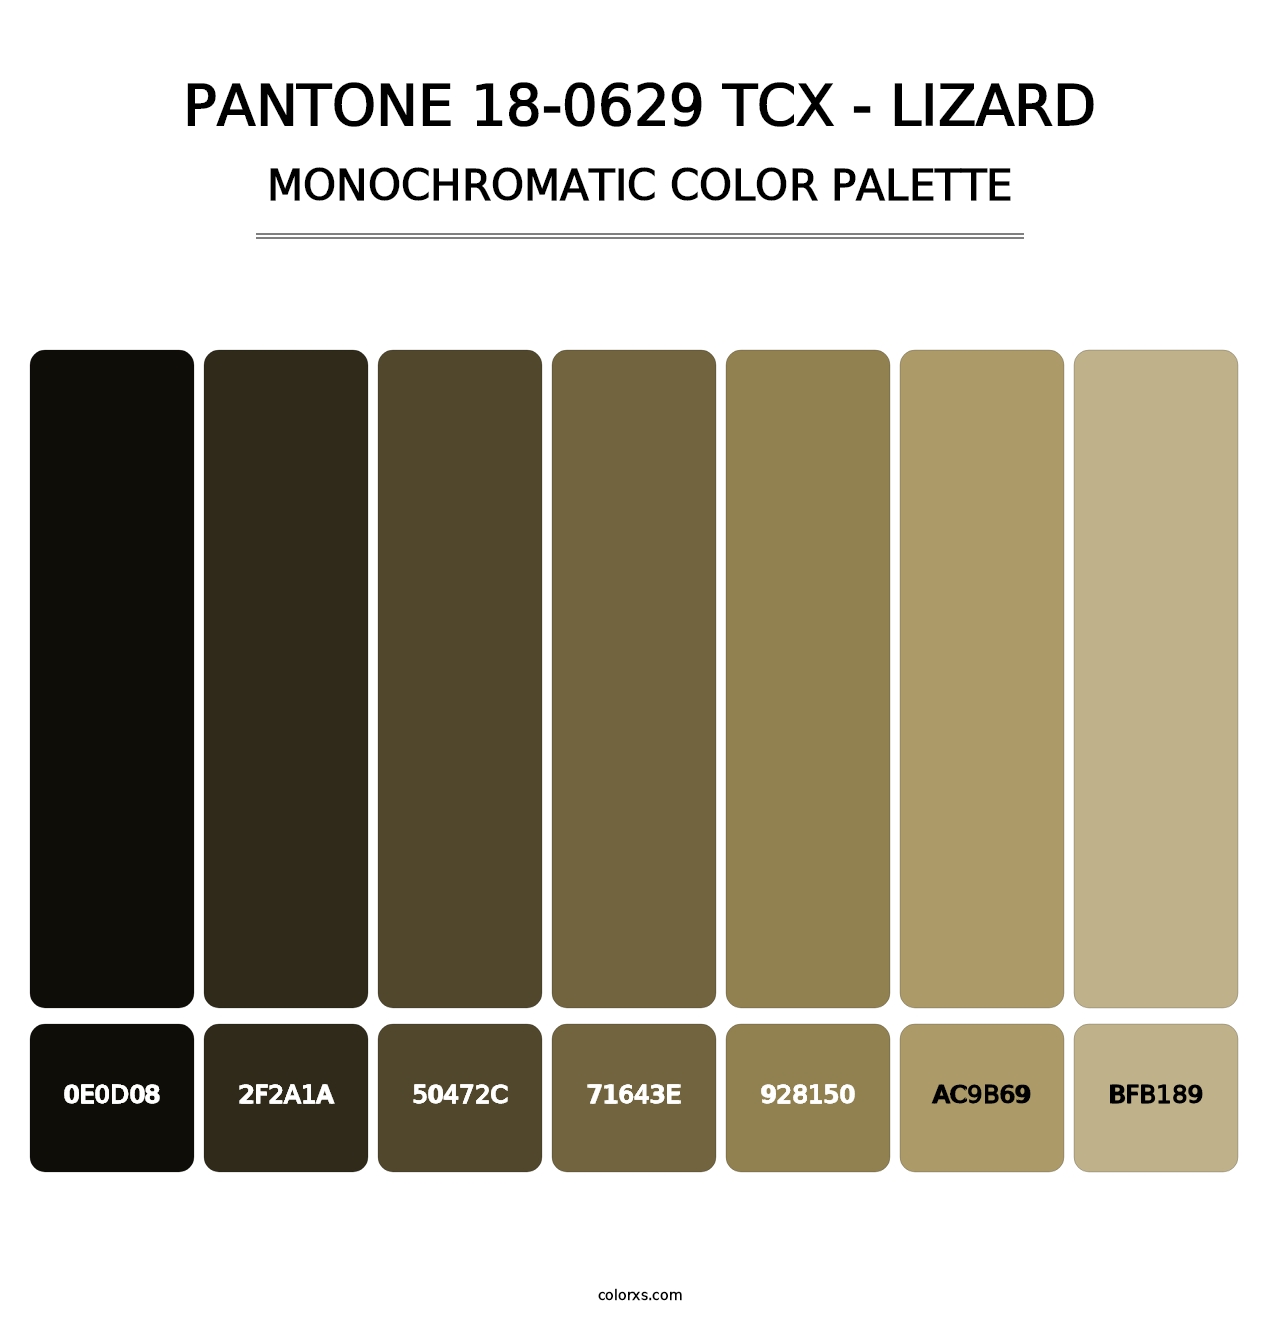 PANTONE 18-0629 TCX - Lizard - Monochromatic Color Palette